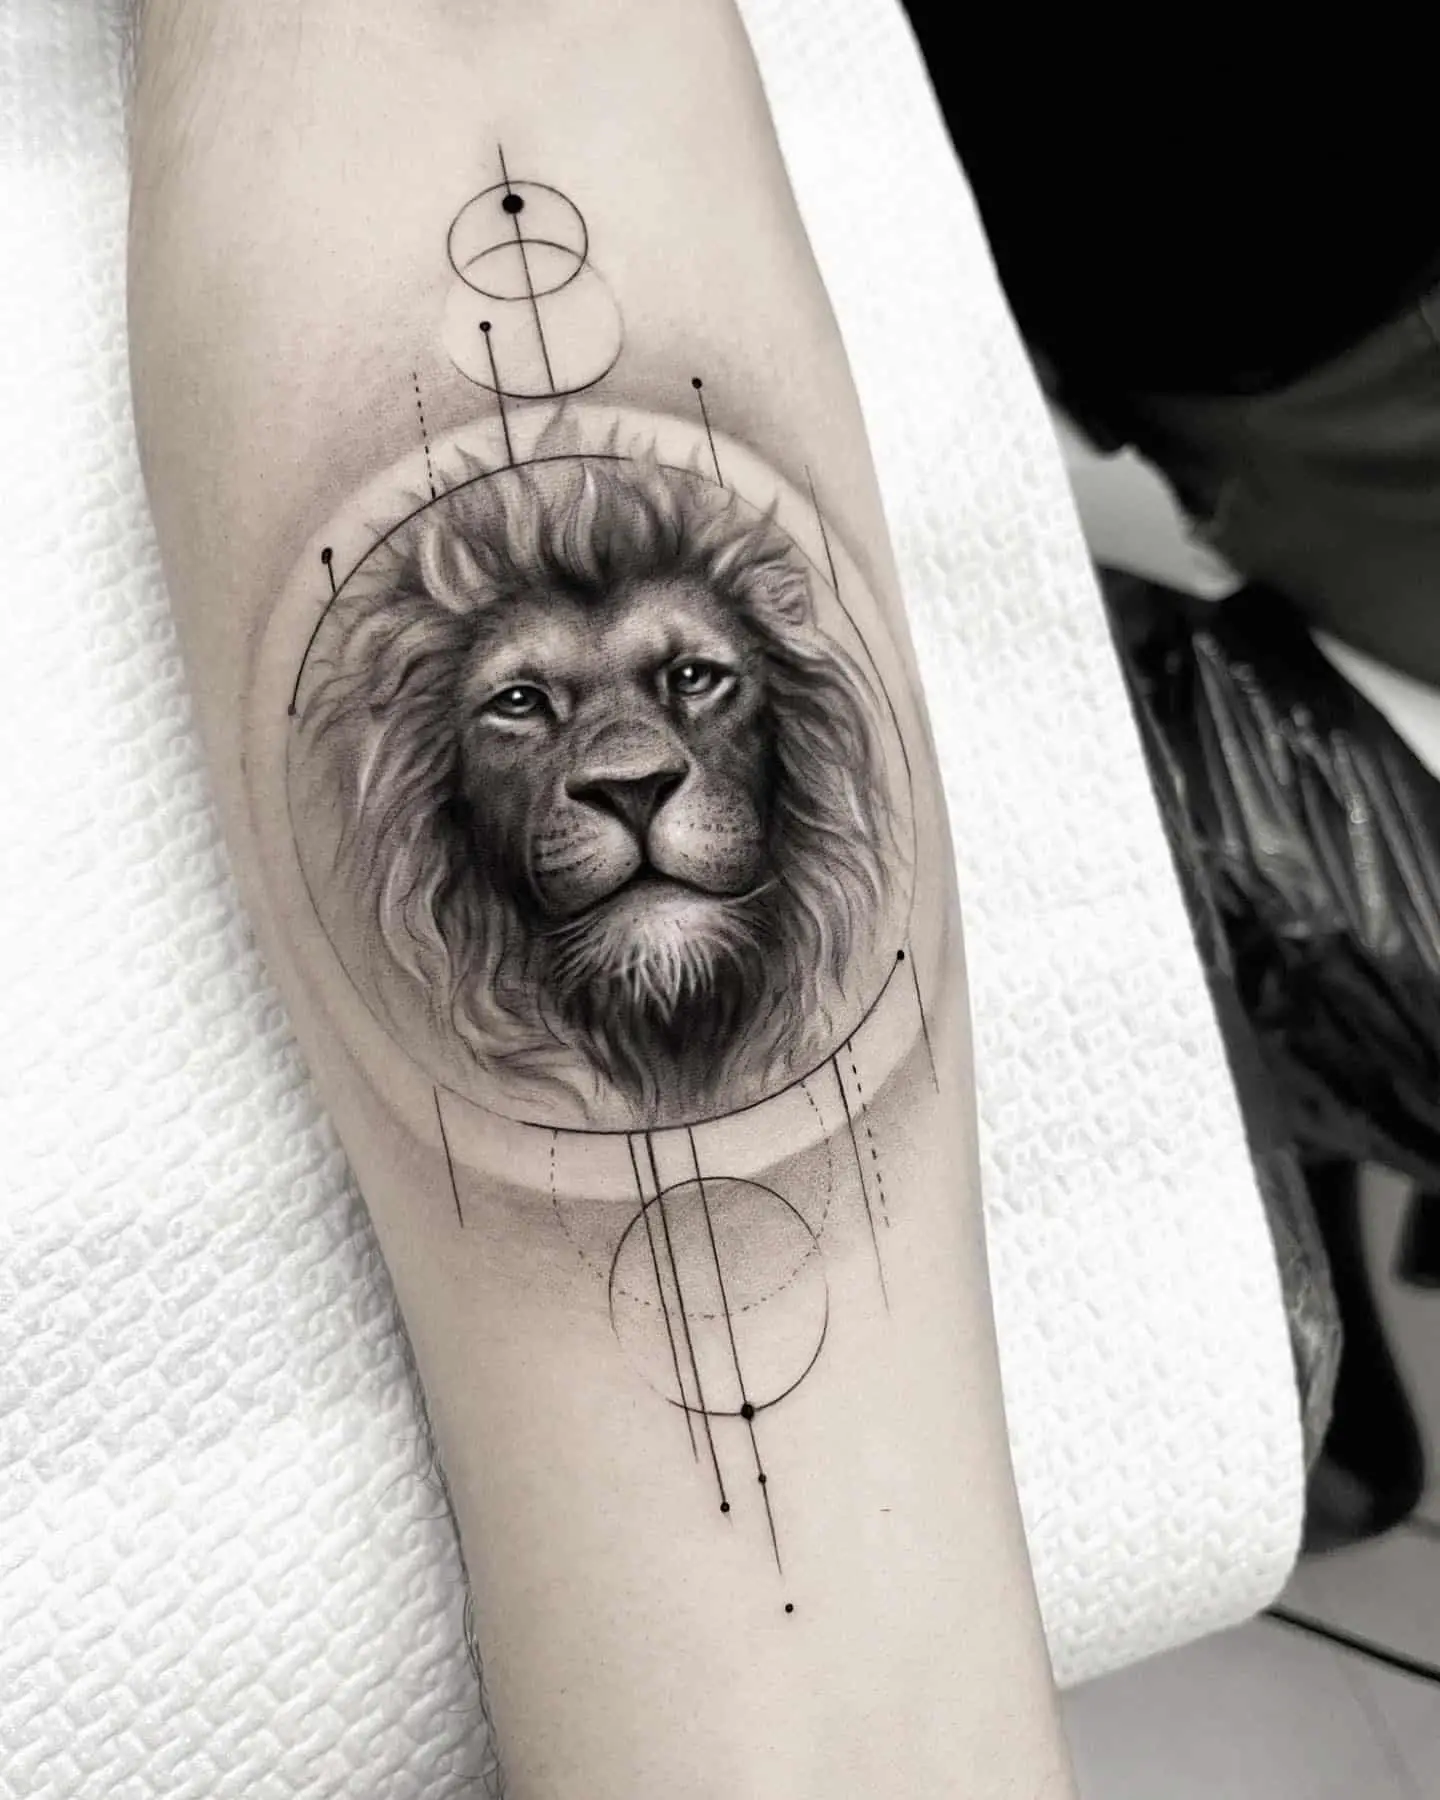 fineline style lion tatoo on forearm